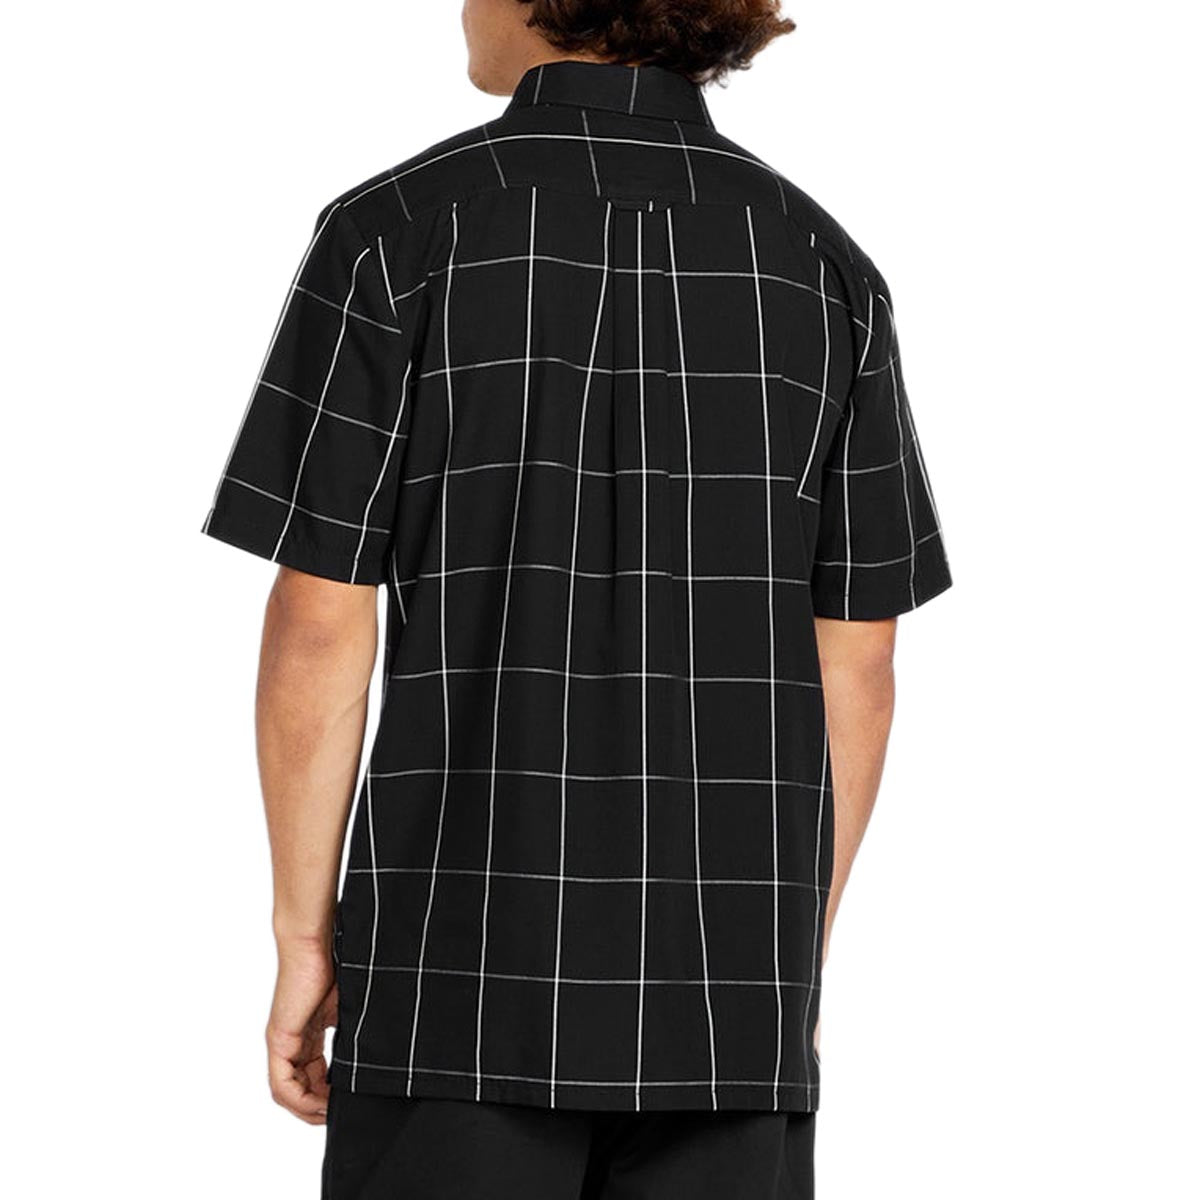 Volcom x Schroff Plaid Shirt - Black image 2